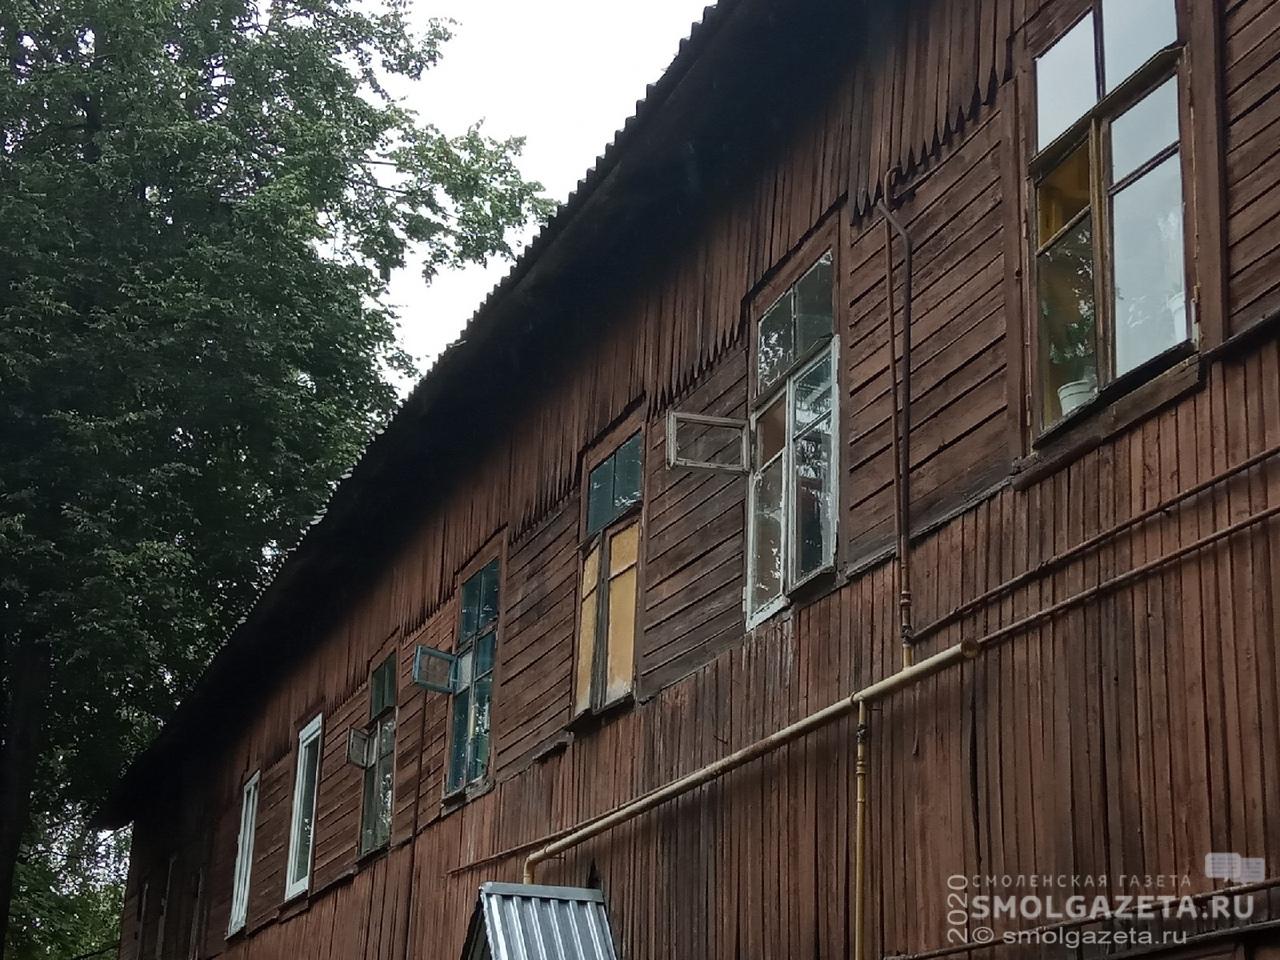 185 многоквартирных домов в Смоленской области признаны аварийными по состоянию на 1 июля 2020 года